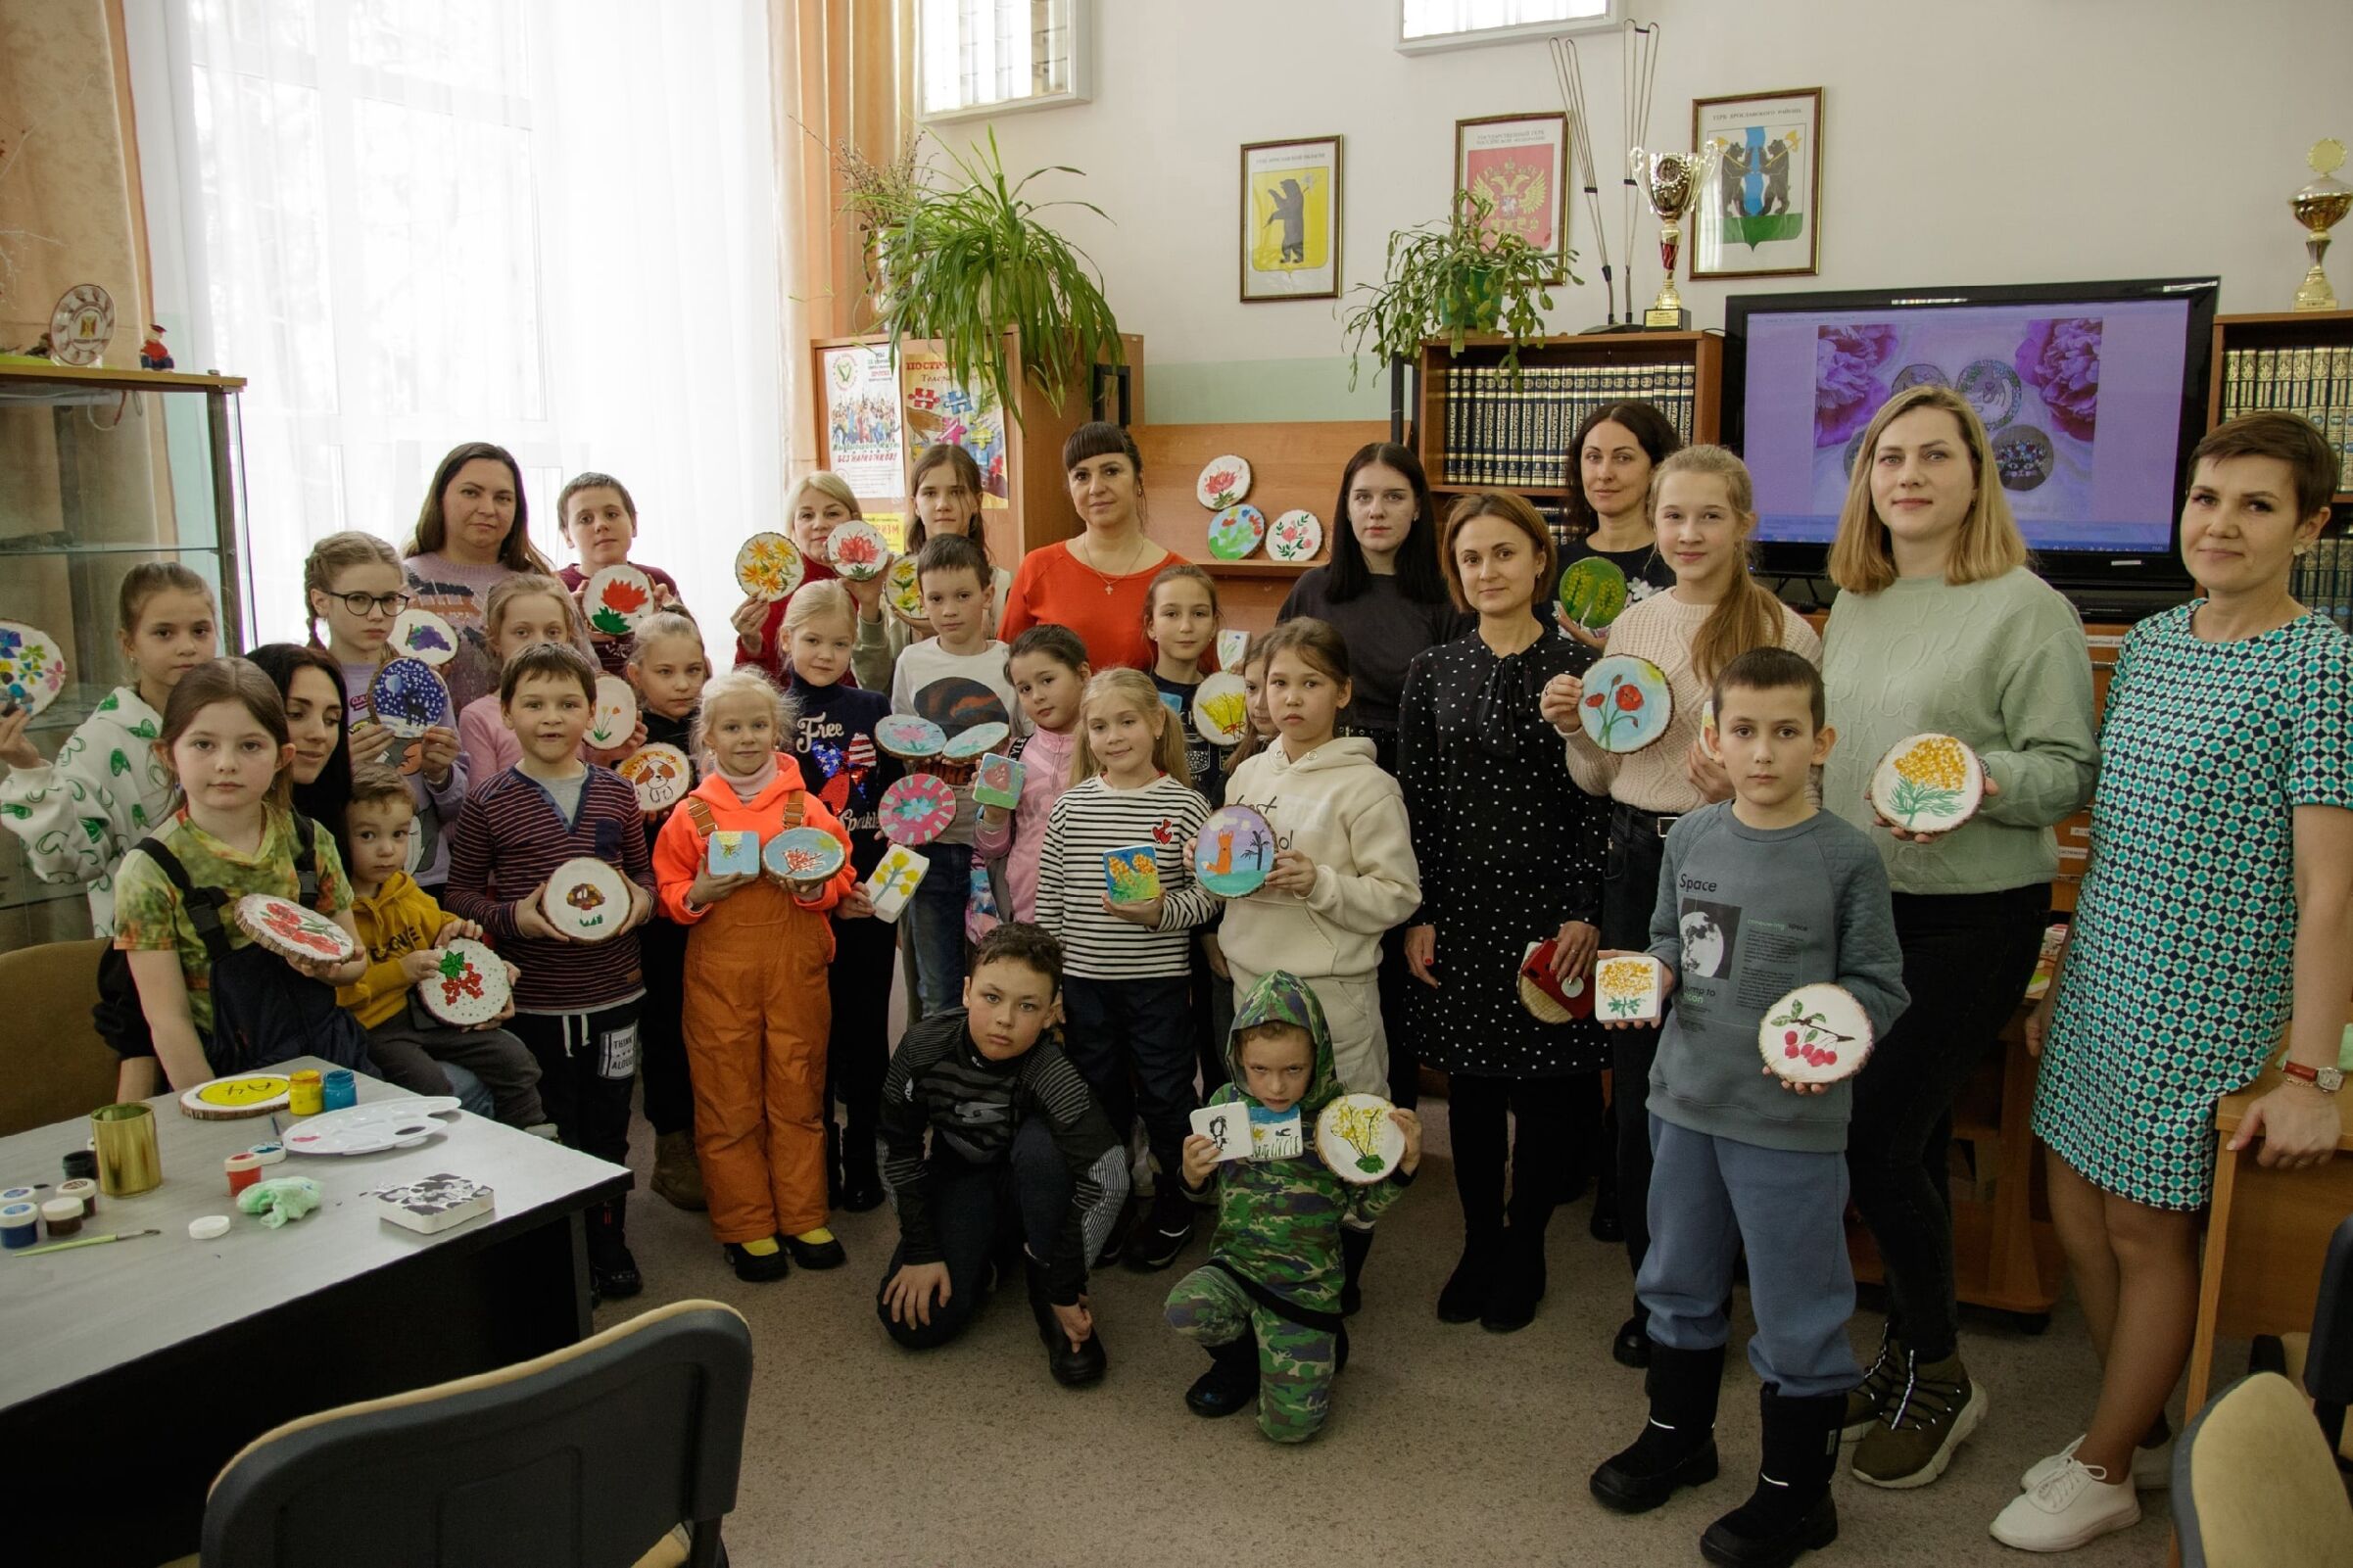 Жители Некрасовского принимают активное участие в изготовлении маскировочных сетей для участников СВО